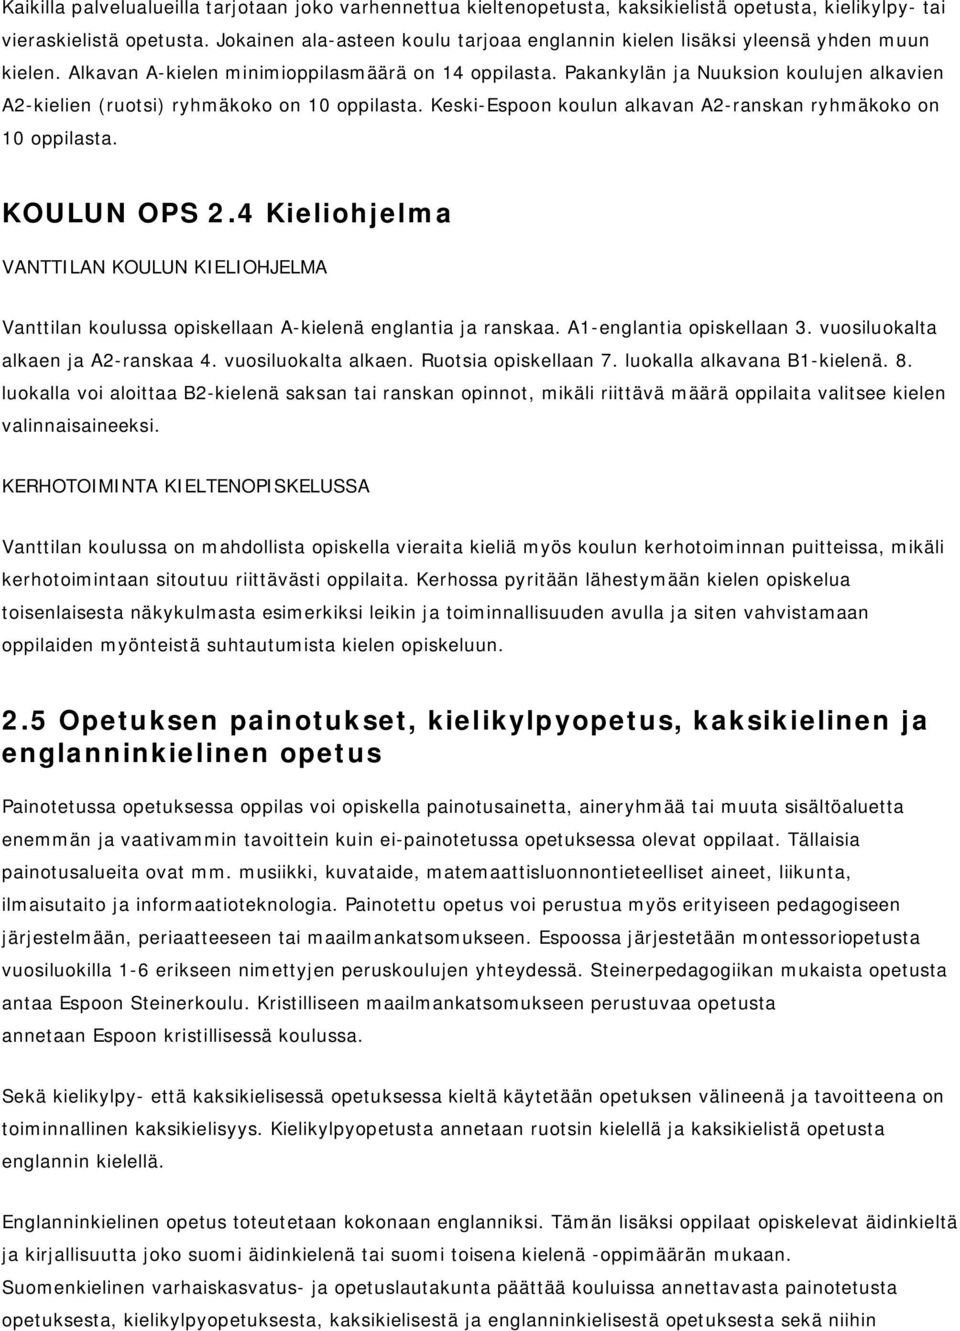 Pakankylän ja Nuuksion koulujen alkavien A2-kielien (ruotsi) ryhmäkoko on 10 oppilasta. Keski-Espoon koulun alkavan A2-ranskan ryhmäkoko on 10 oppilasta. KOULUN OPS 2.